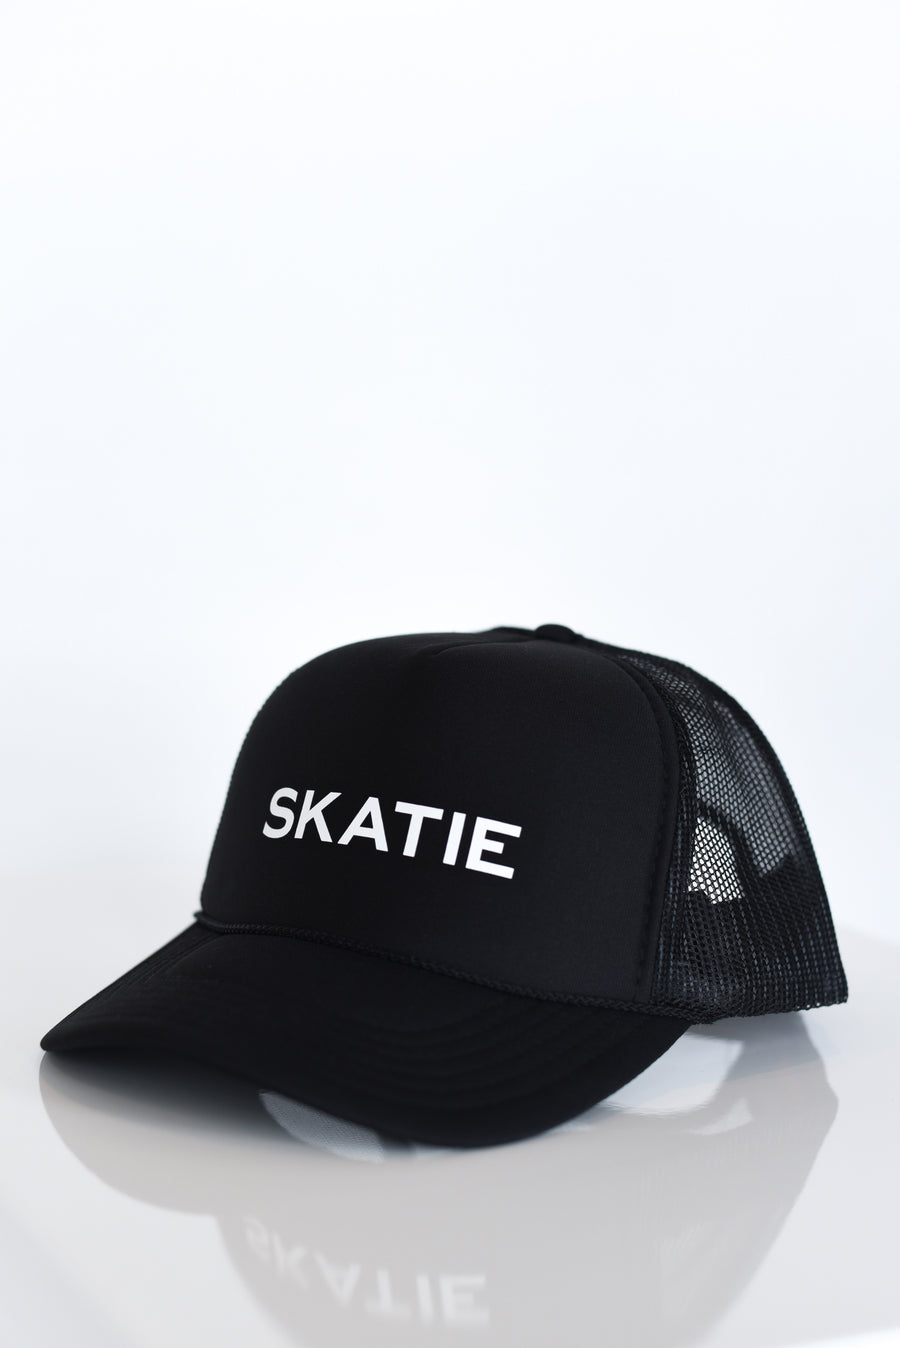 Skatie Logo Trucker Hat - Black